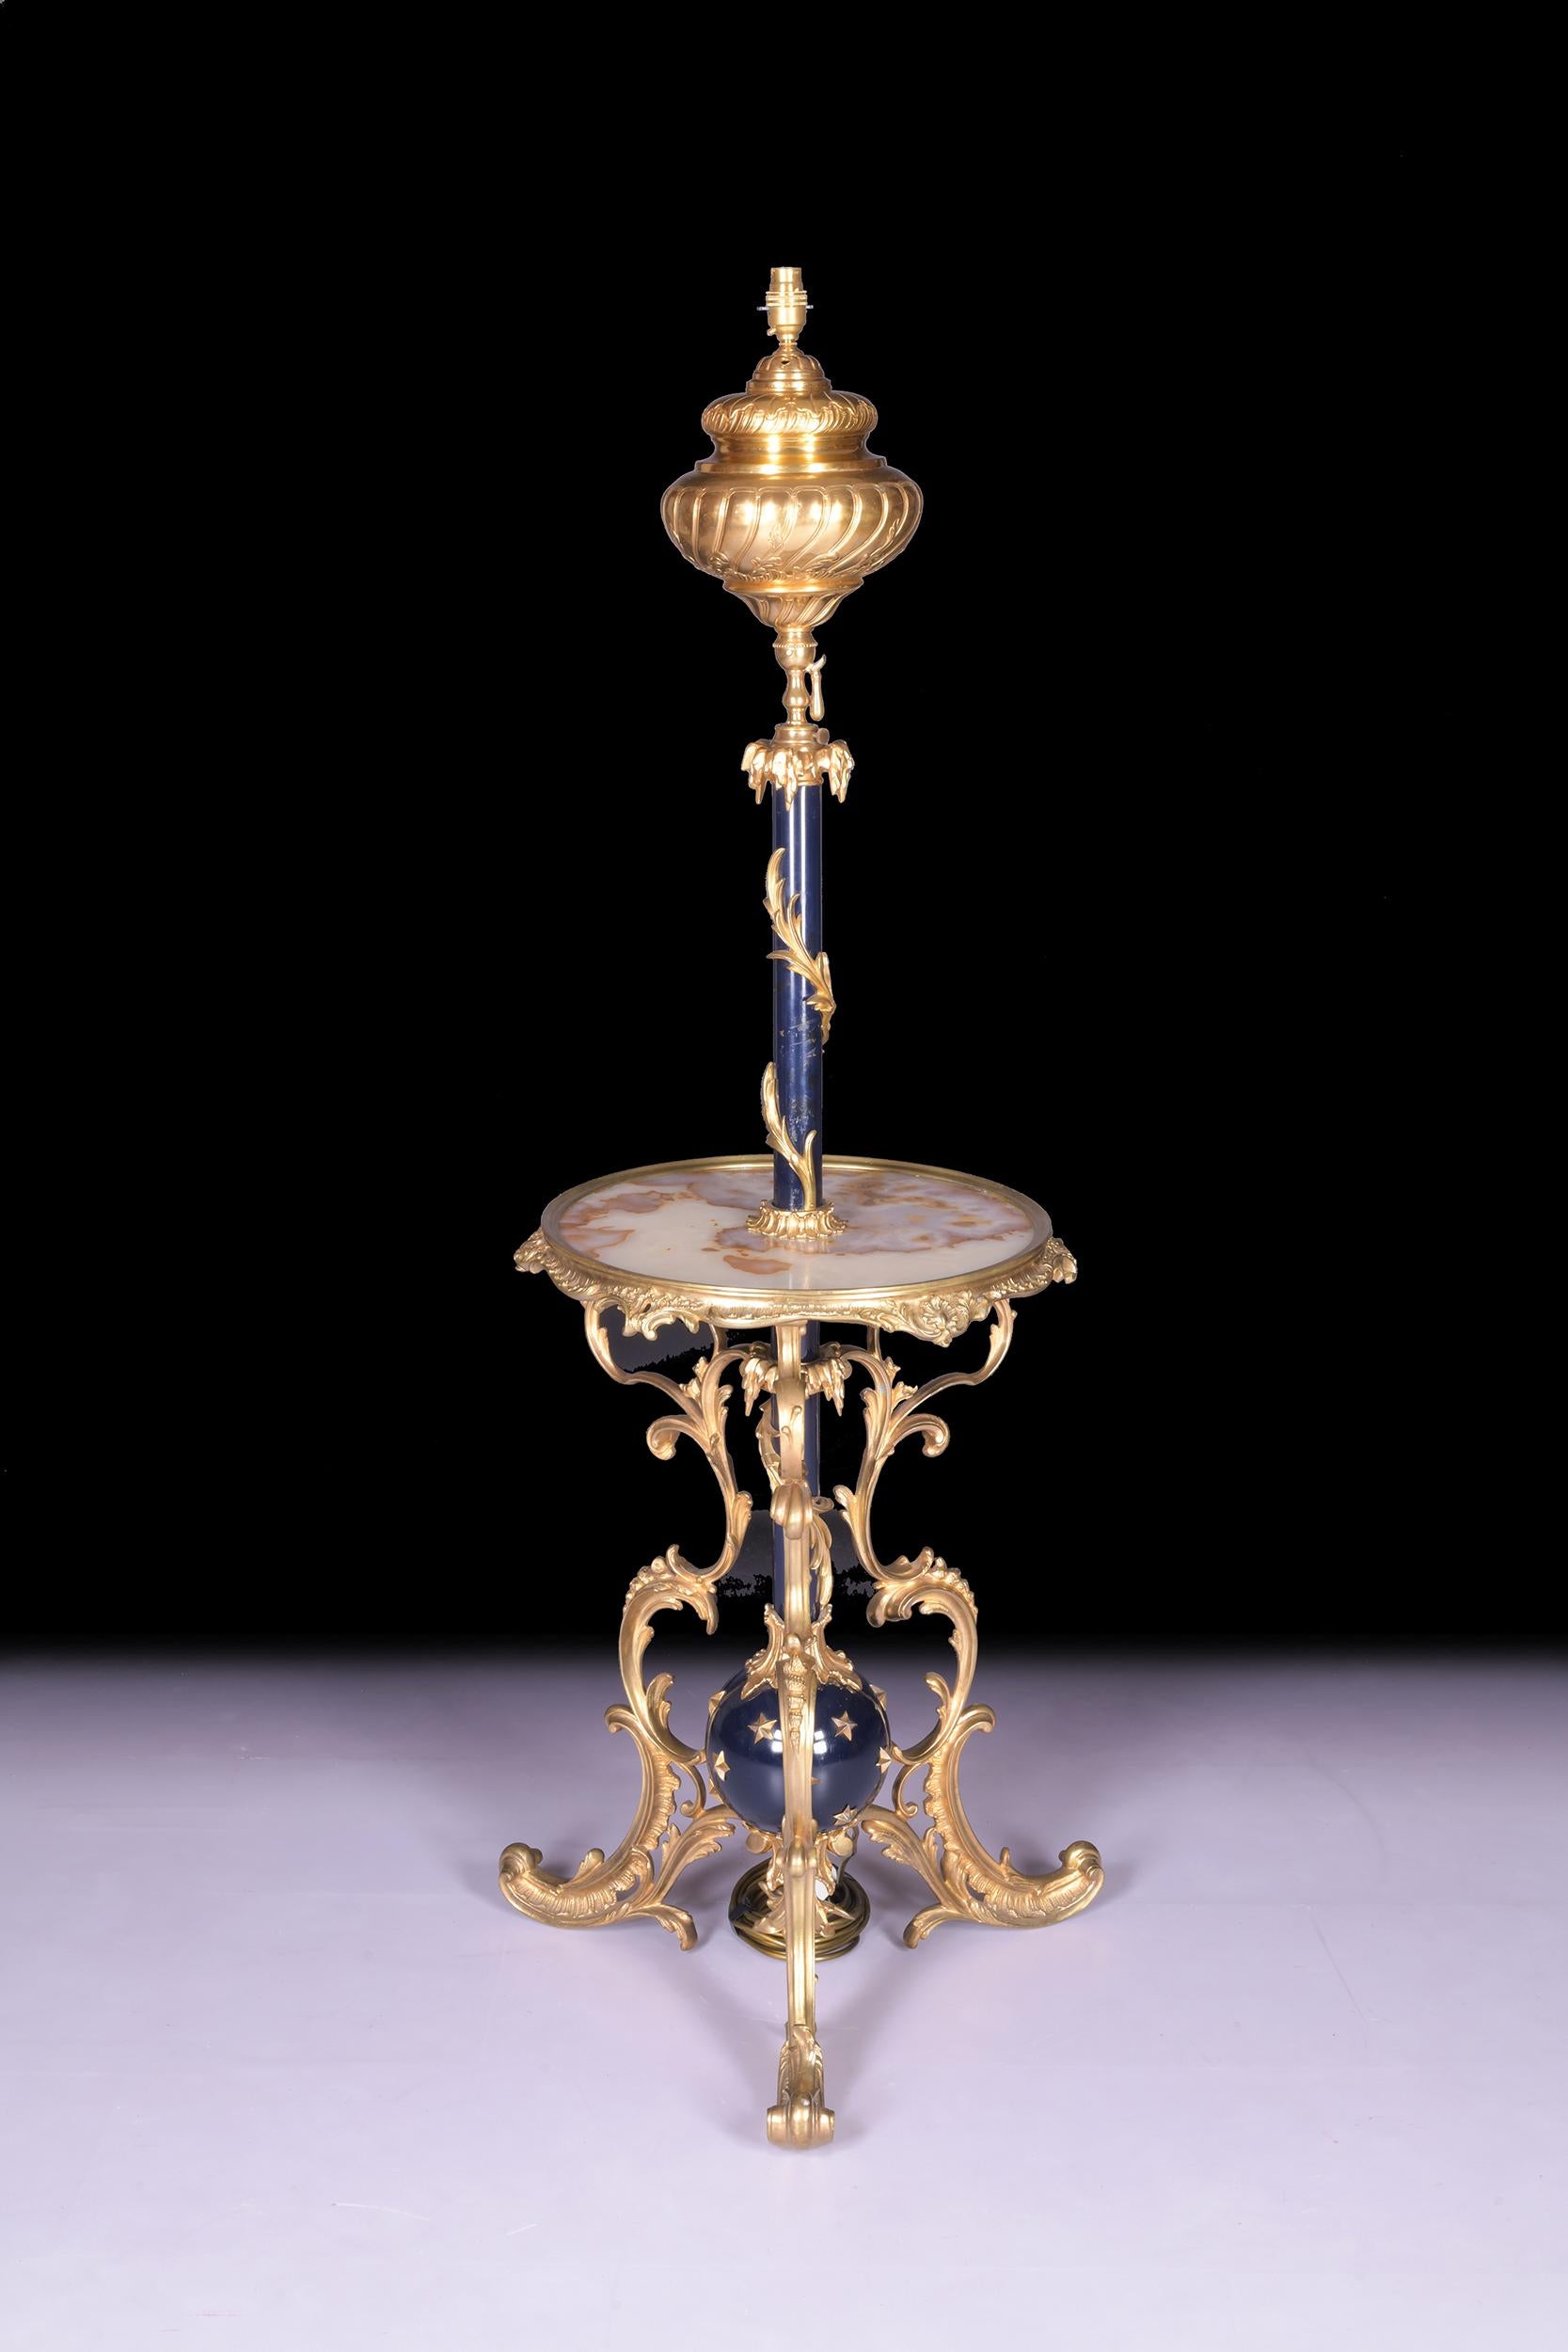 Eine außergewöhnliche Qualität Rokoko Wiederbelebung späten 19. Jahrhundert Französisch Ormolu und Onyx teleskopische Stehlampe, mit gedrehten zentralen Säule, um die kreisförmige Ranken Marmor Regal. Das Ganze steht auf drei verschnörkelten